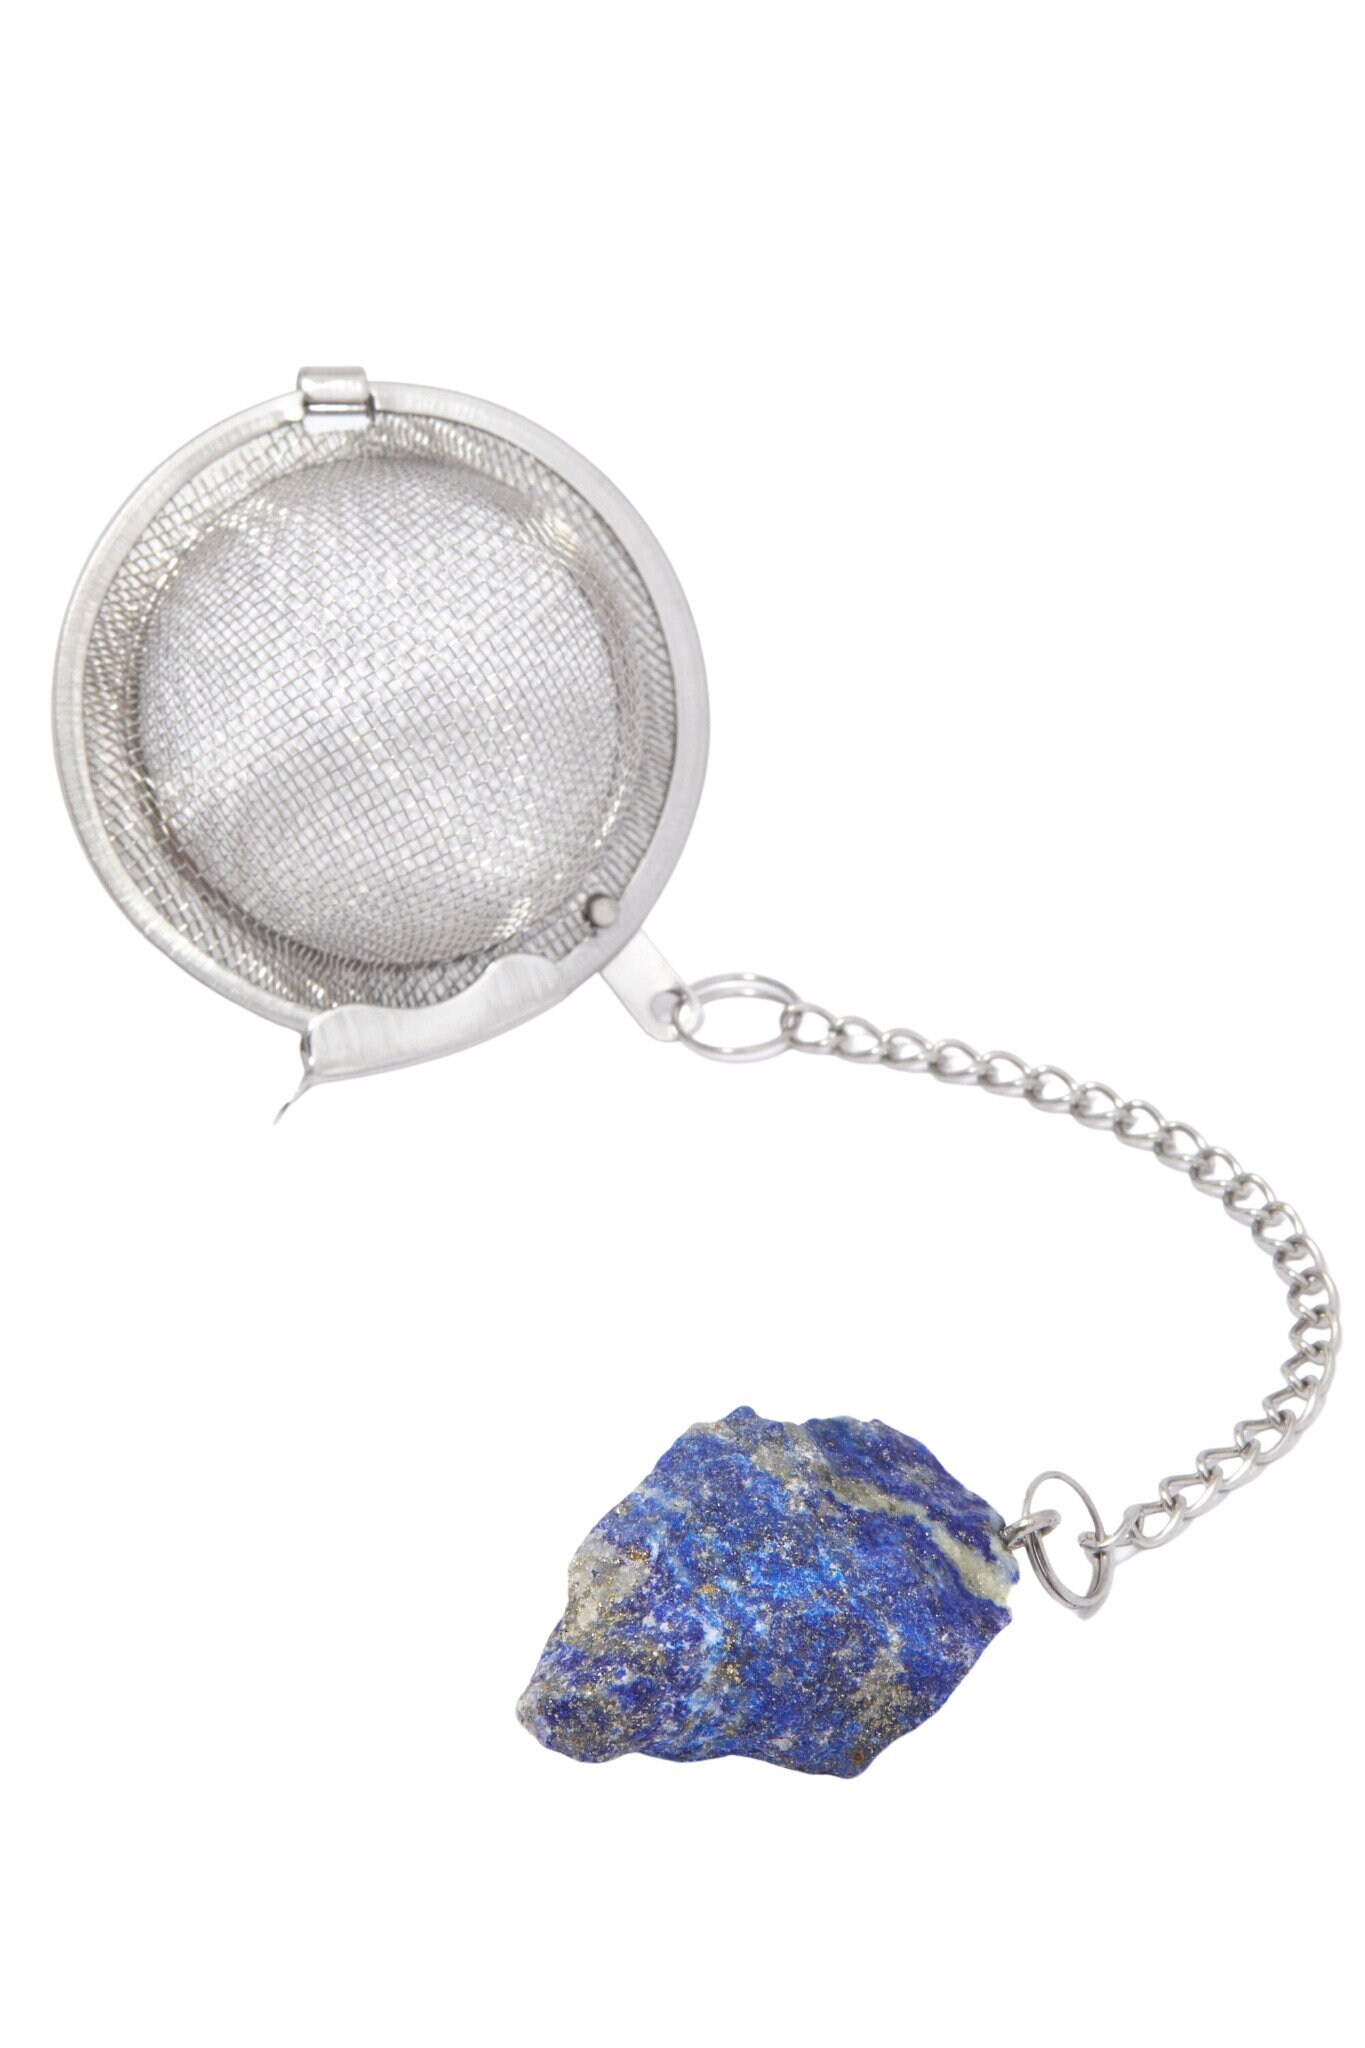 infuseur de thé en pierre lapis lazuli brut - boule cristal passoire à cute tea steeper diffuseur brut